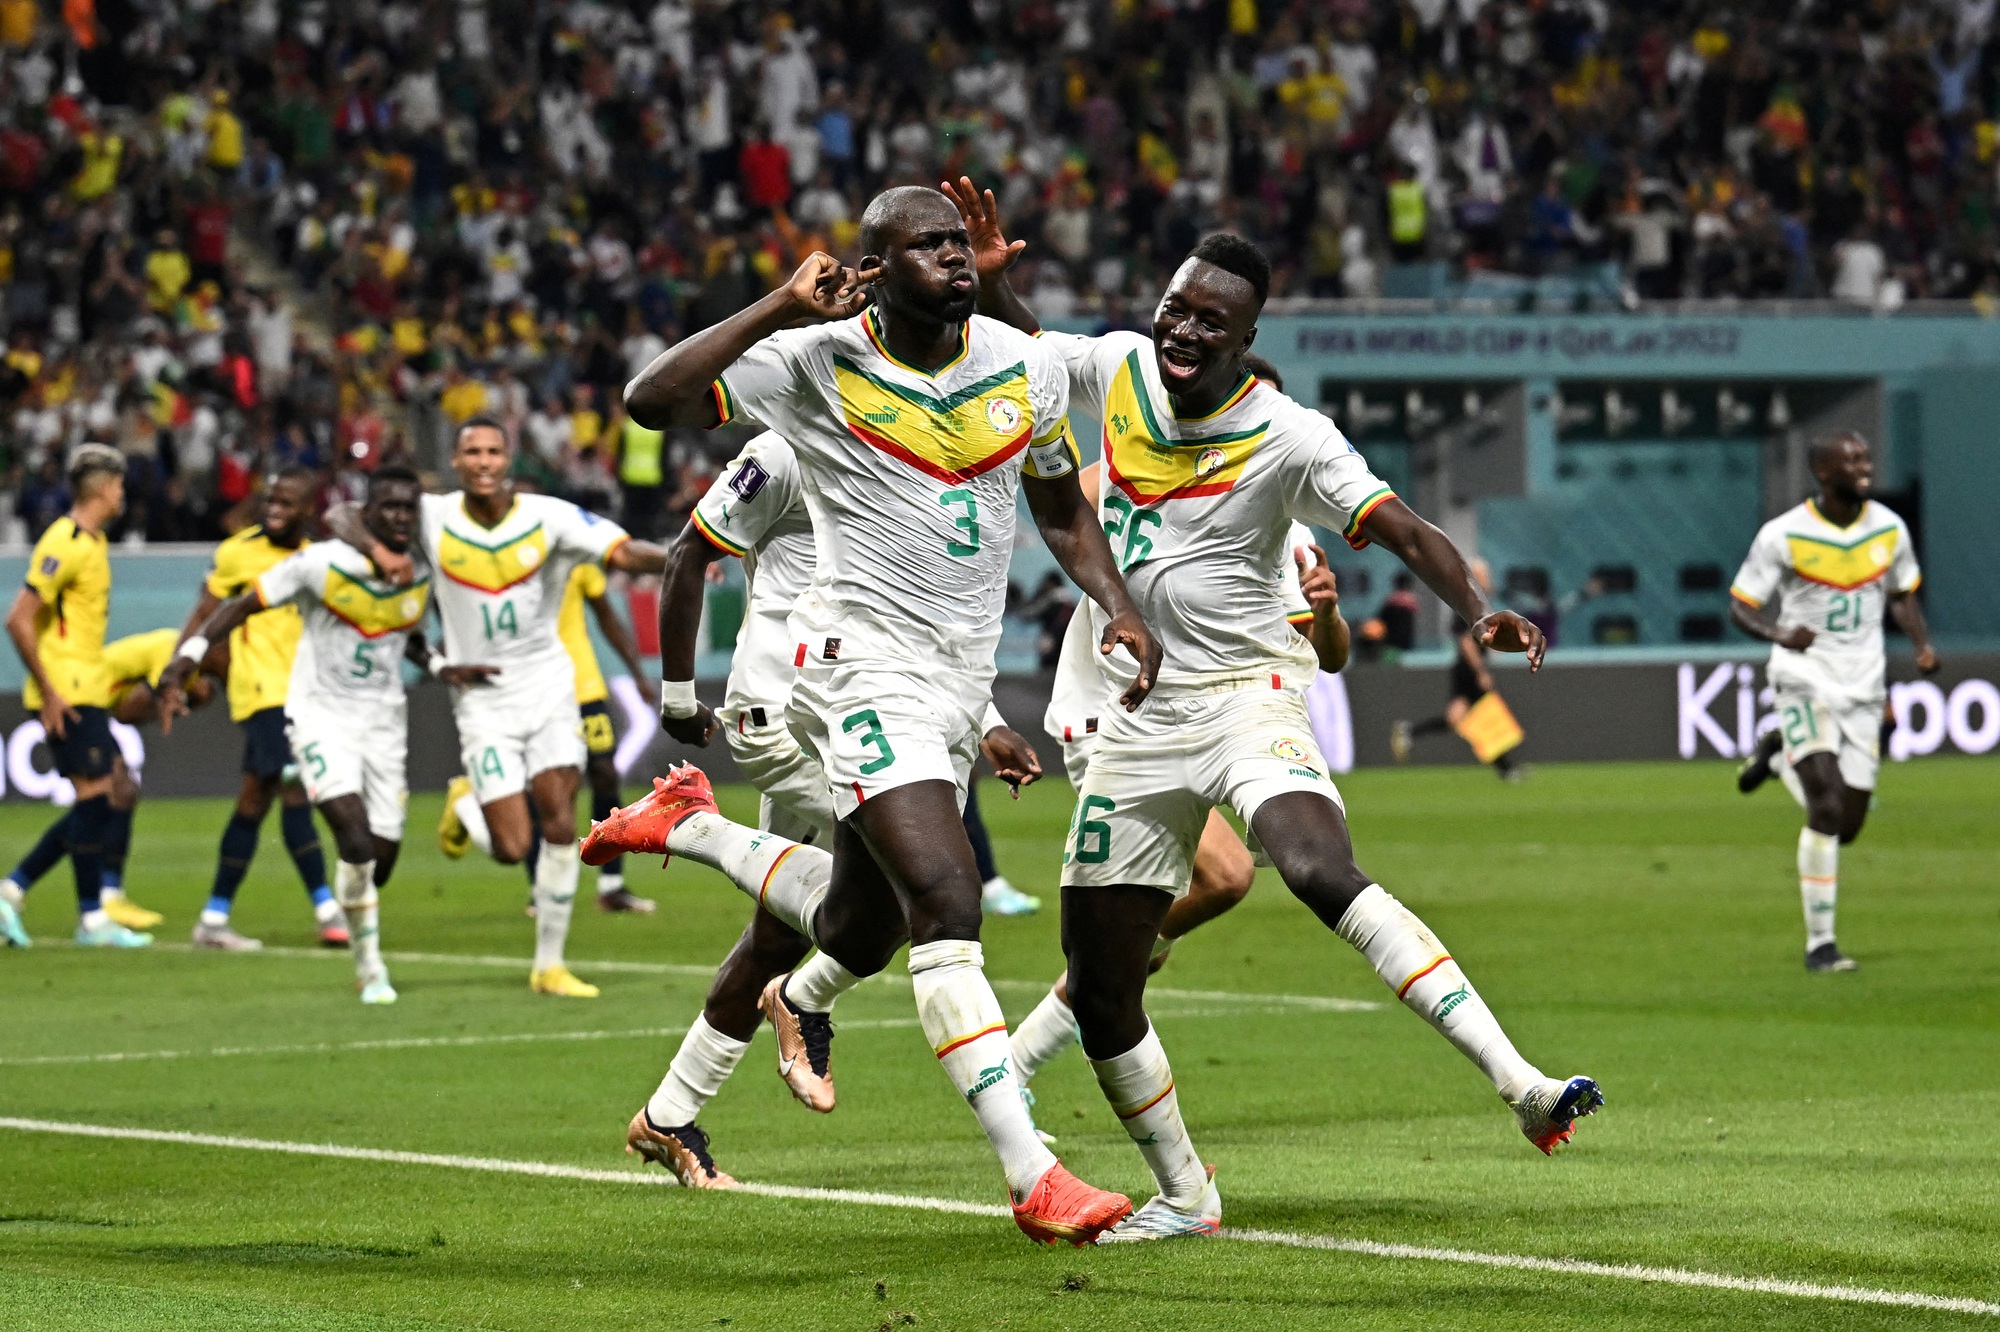 Cờ Senegal là biểu tượng tuyệt vời của đất nước nằm ở tại Tây Phi. Để hiểu thêm về nguồn gốc và ý nghĩa của lá cờ nổi tiếng này, hãy xem hình ảnh liên quan. Bạn sẽ gặp gỡ với một đất nước đầy sắc màu và văn hoá đa dạng, chắc chắn sẽ khiến bạn trầm trồ và phấn khích.